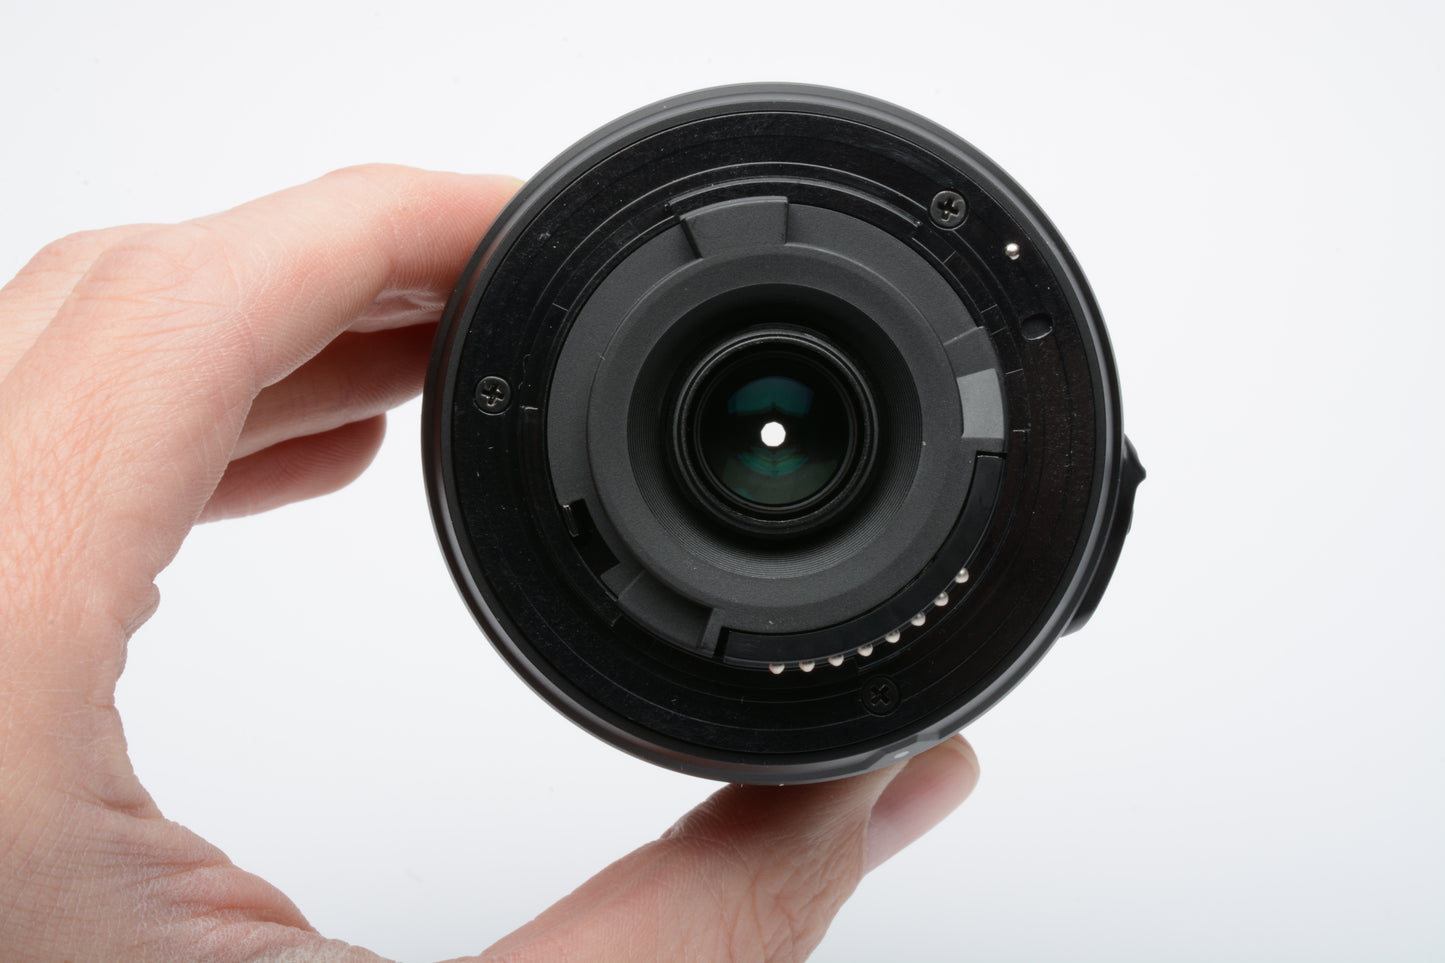 Nikon AF-S DX Zoom Nikkor 55-200mm f4-5.6G ED DX lens, Boxed, Mint